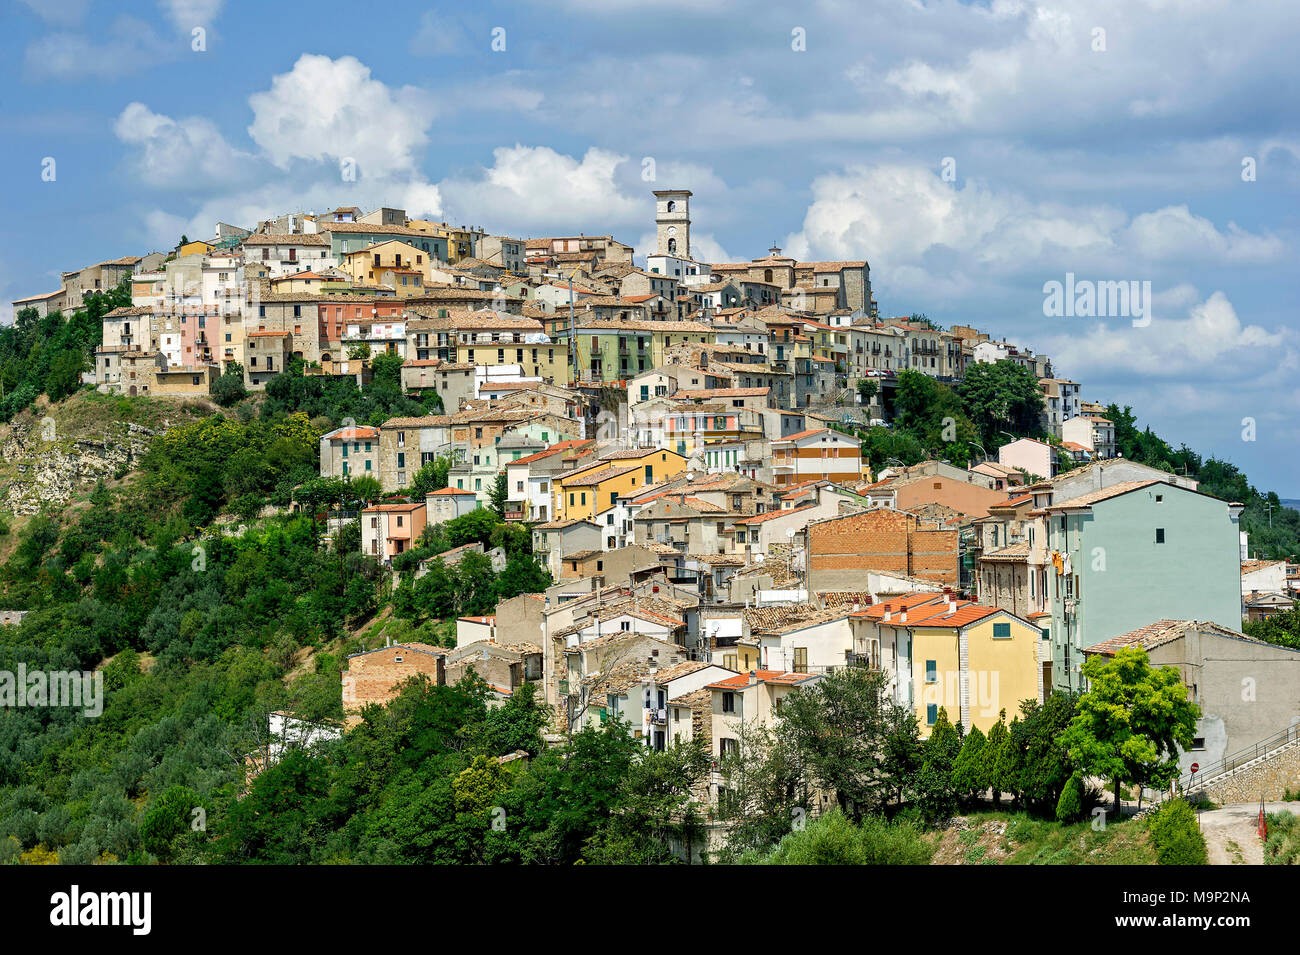 Vue sur la vieille ville sur une colline verte, Trivento, Molise, Italie Banque D'Images